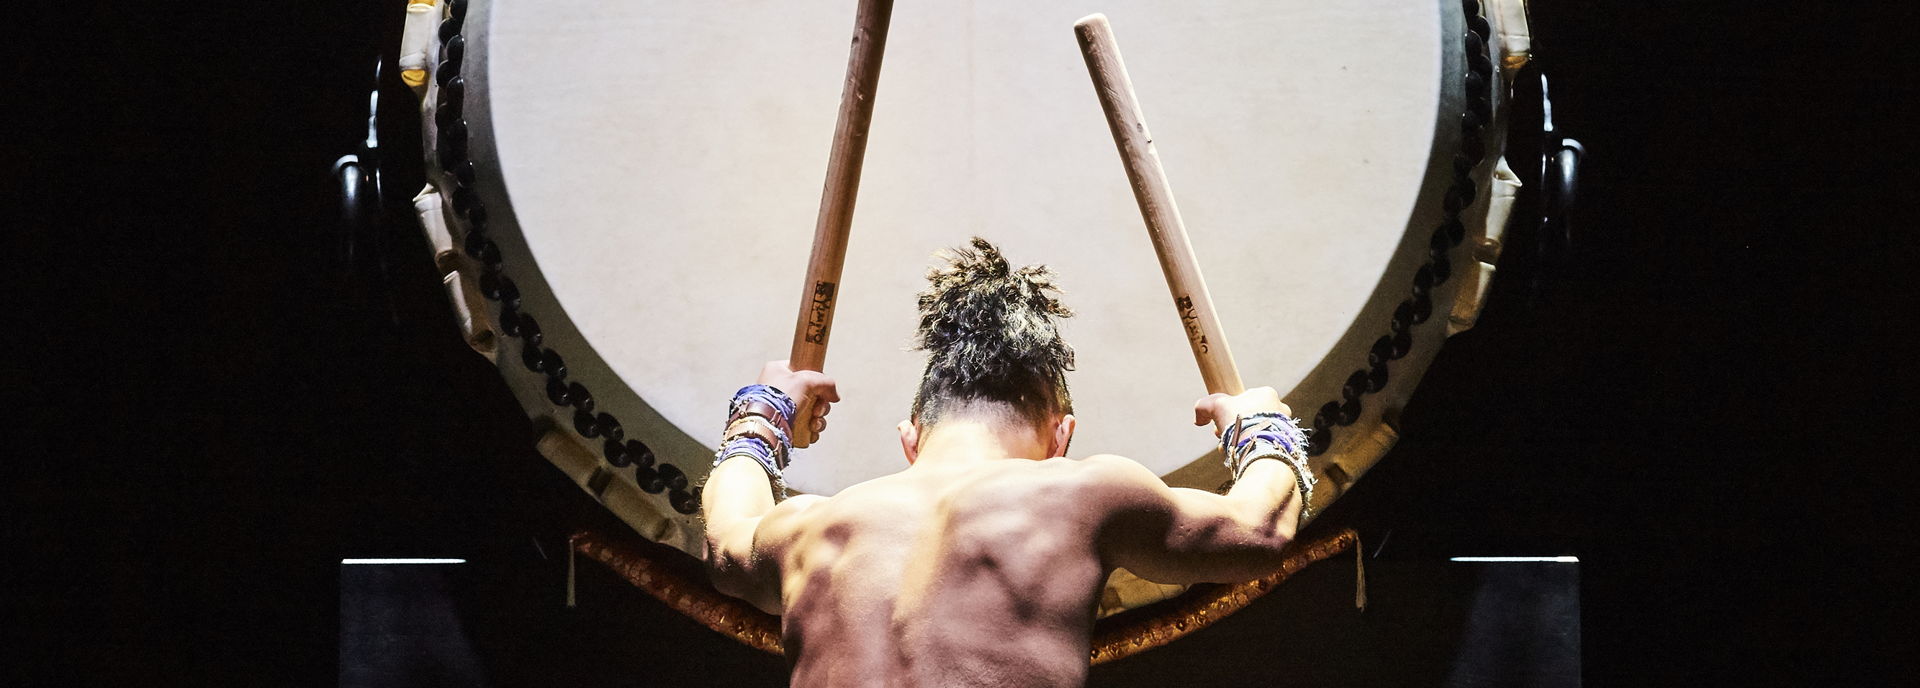 De Japanse drummers van Yamato zijn terug in Hoogeveen met een nieuwe show. Met de eeuwenoude taiko-drums zorgen ze voor een golf van energie, originaliteit en innovatie. 